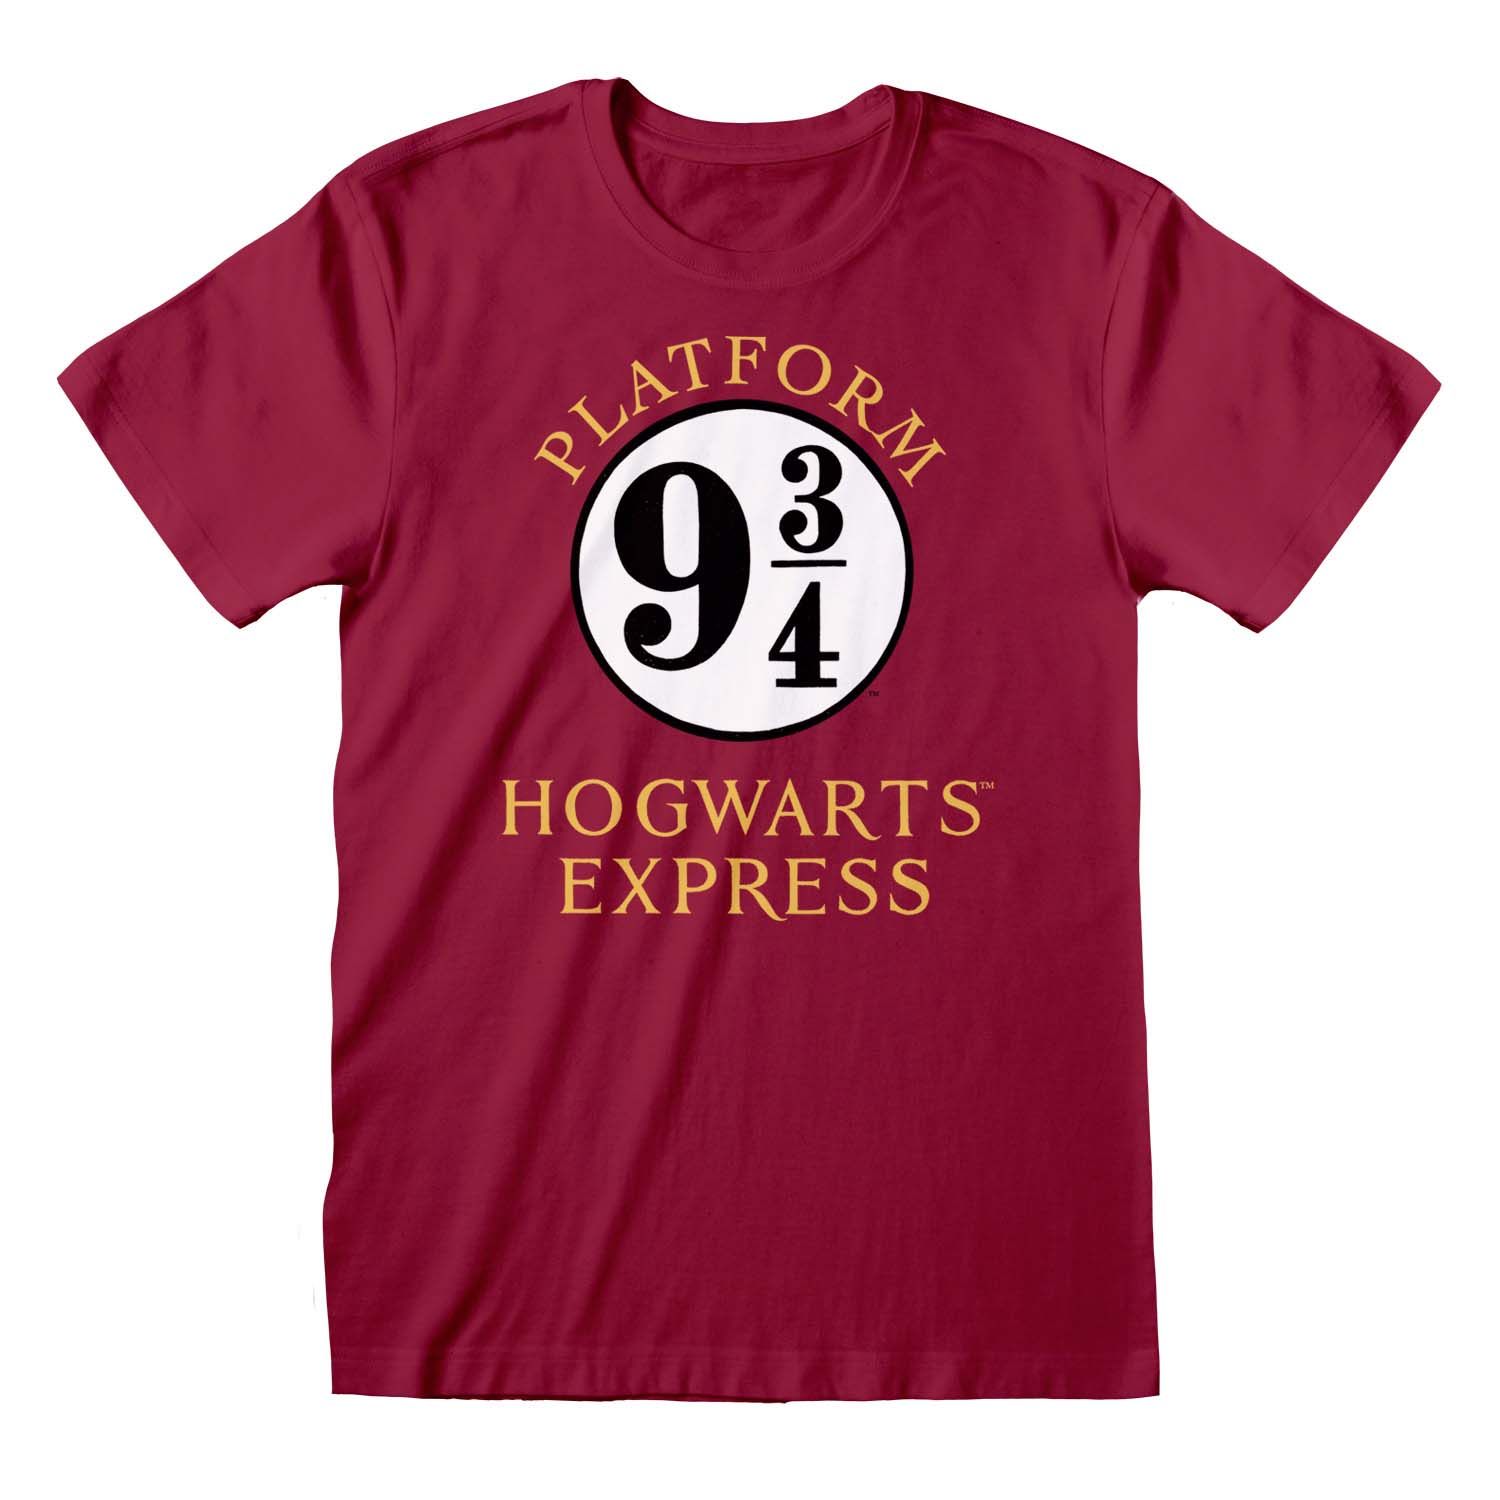 - Platform Merchoid T-Shirt Hogwarts Harry Express 9 3/4 Potter: